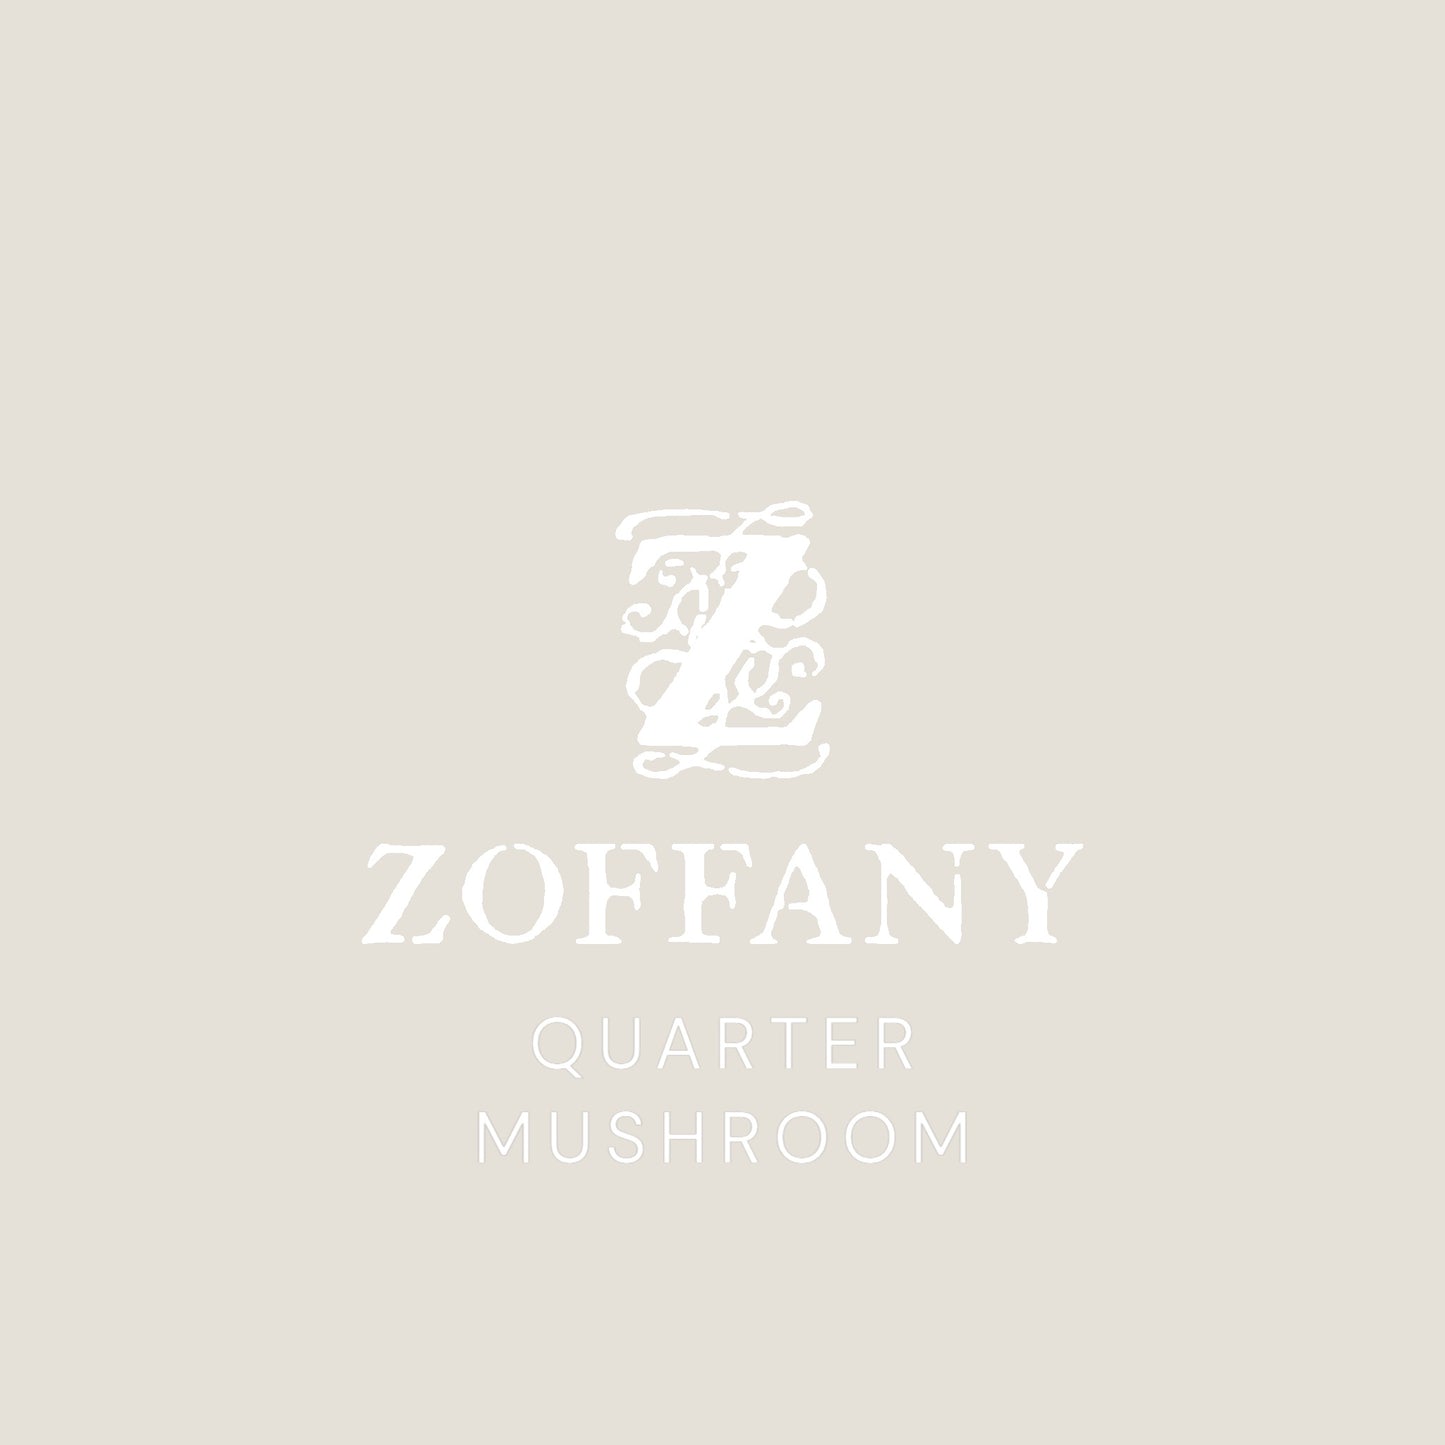 Zoffany's Quarter Mushroom Paint